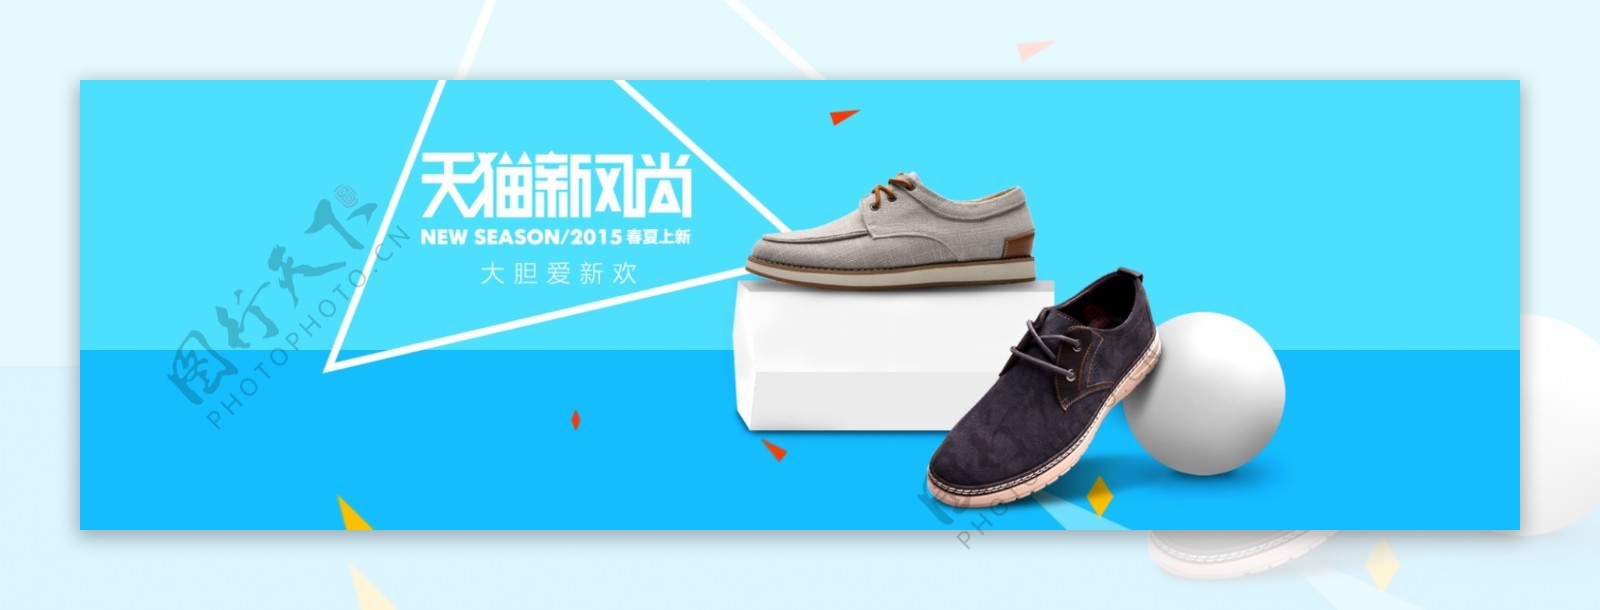 新风尚男鞋宣传banner